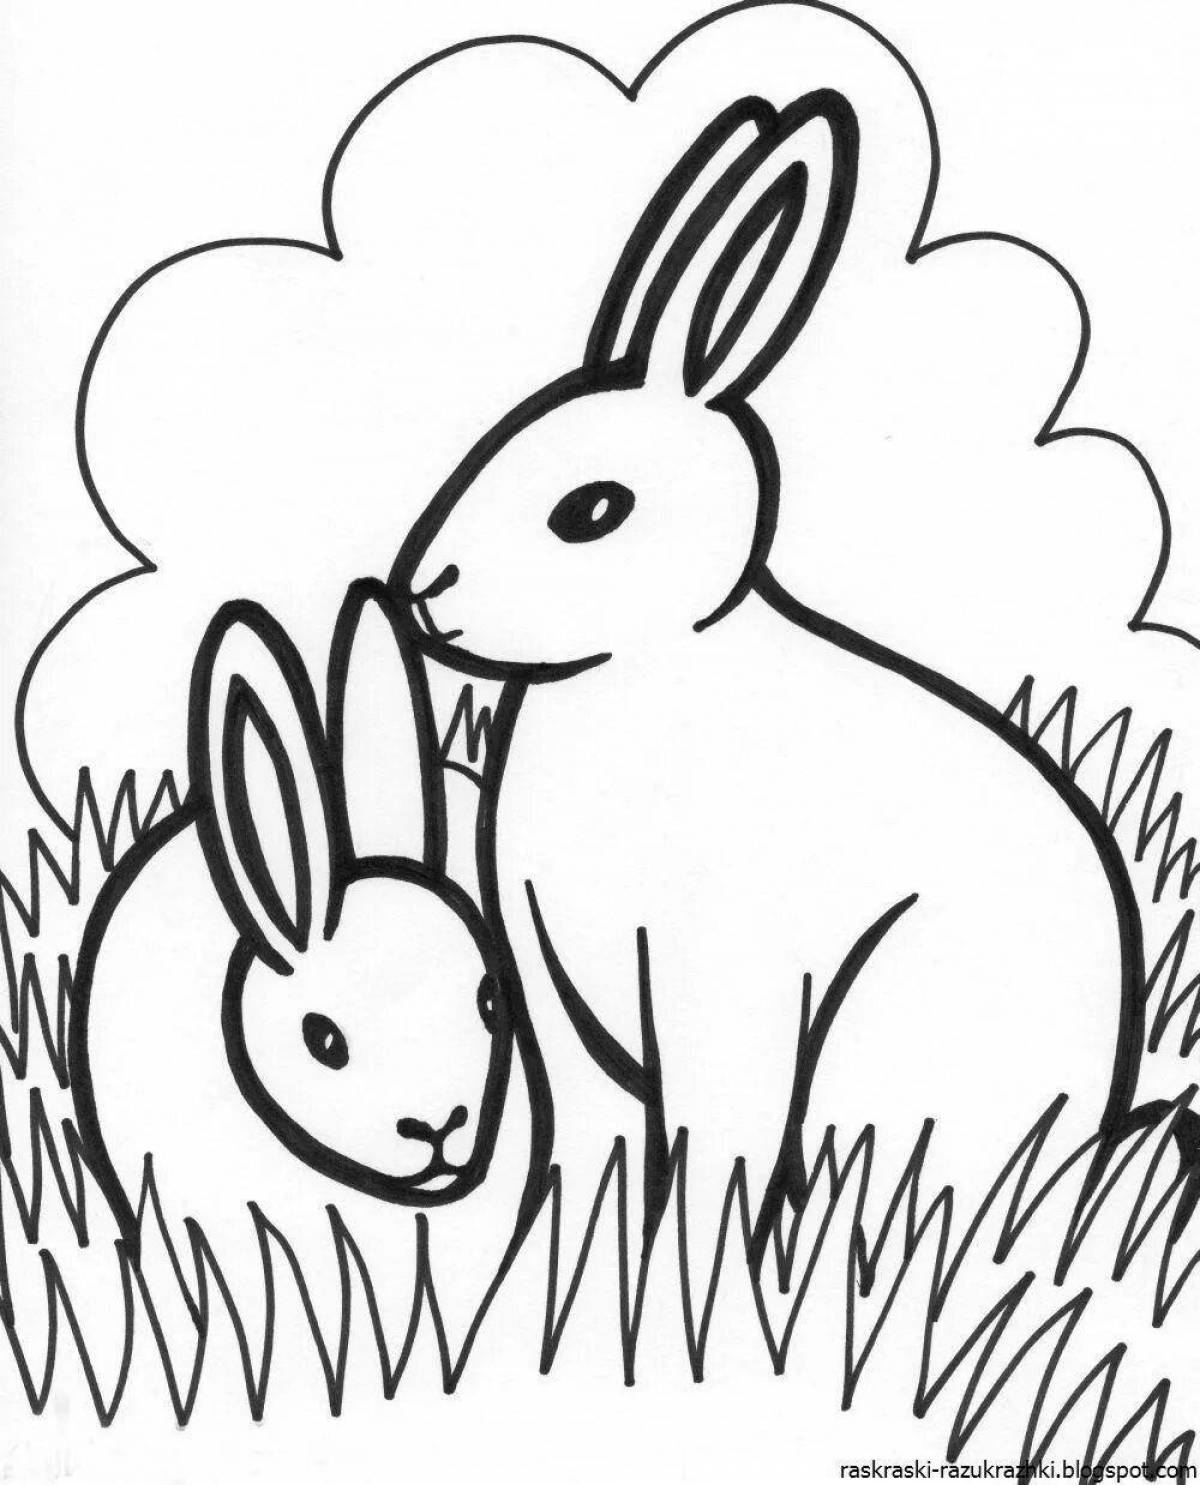 Игривый рисунок кролика для детей